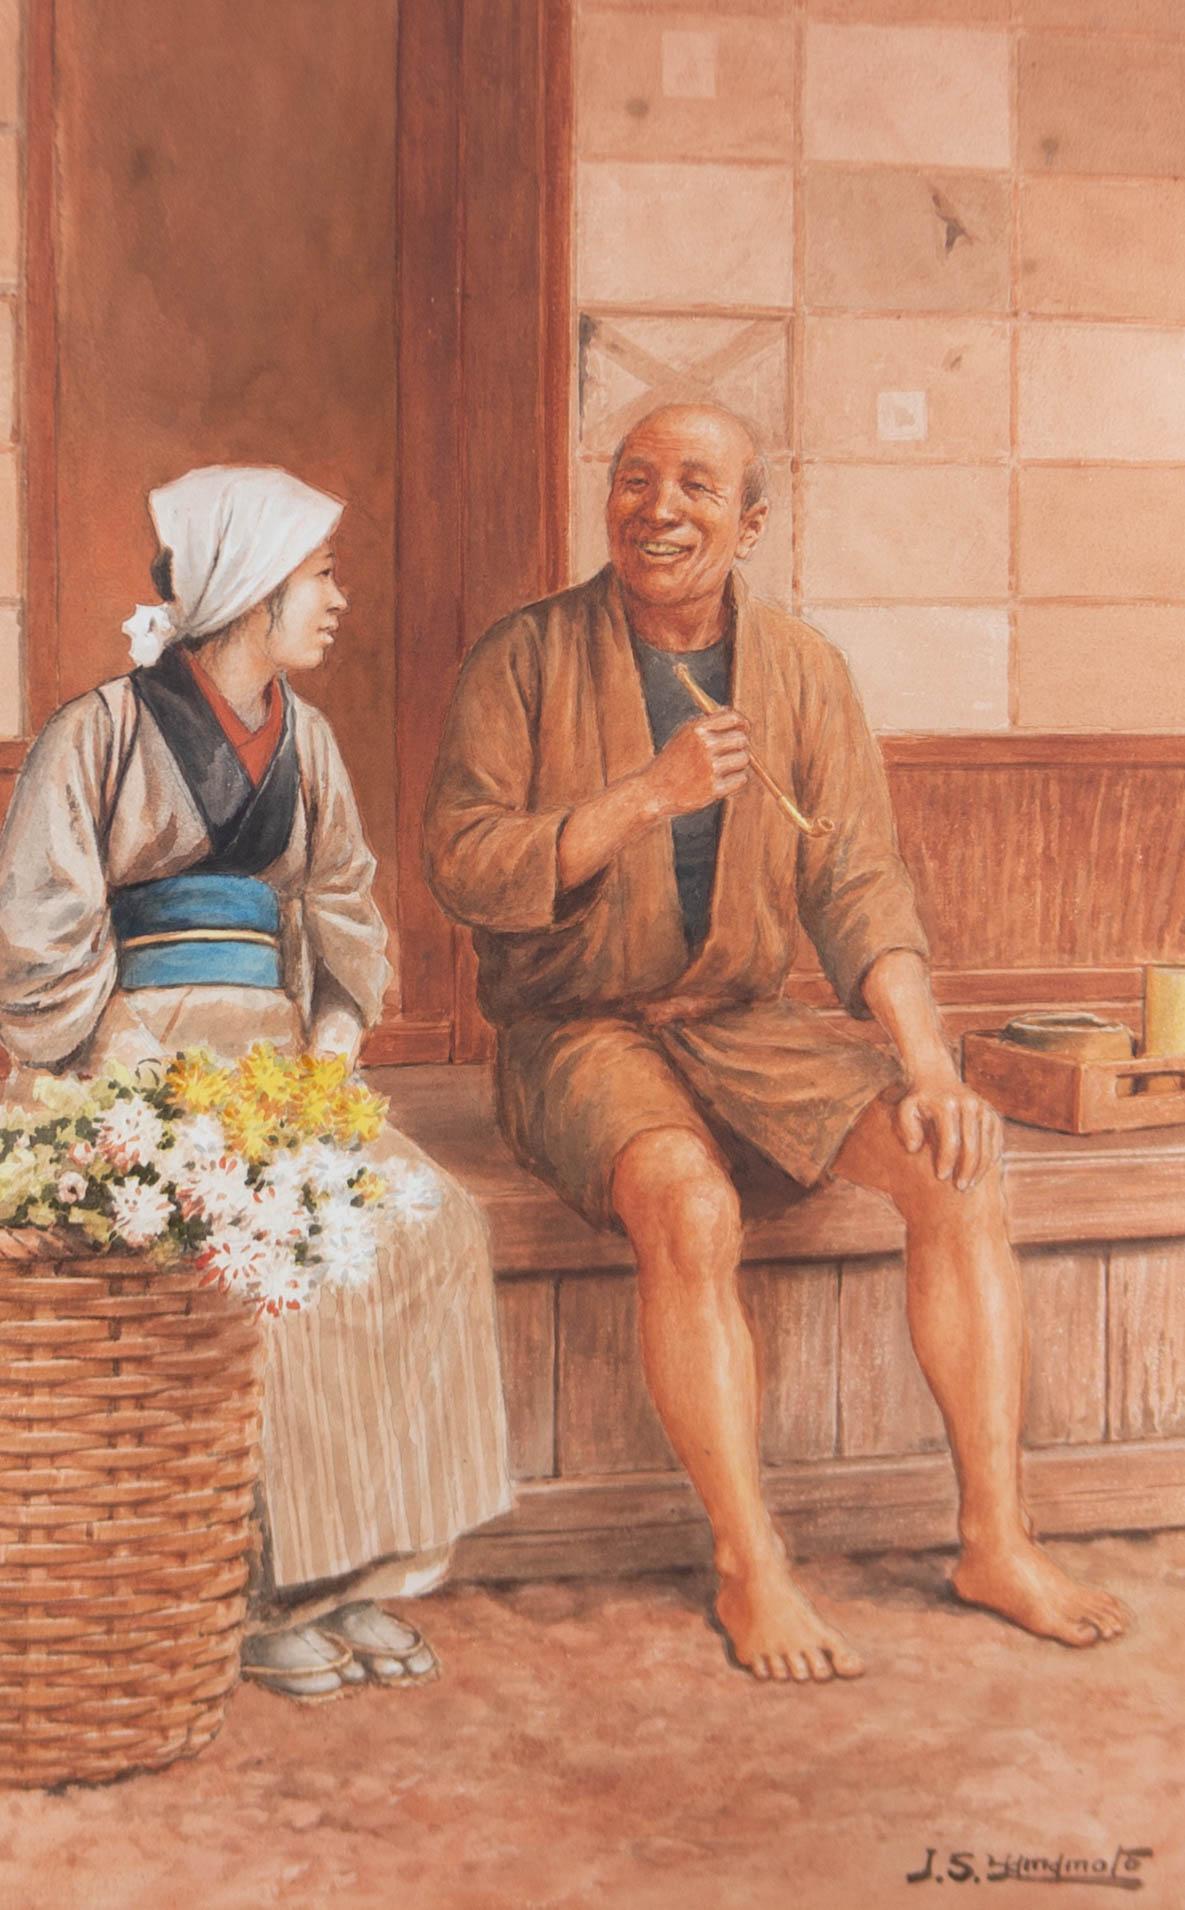 J.S. Yamamoto - Early 20th Century Watercolour, A Joyful Moment 1